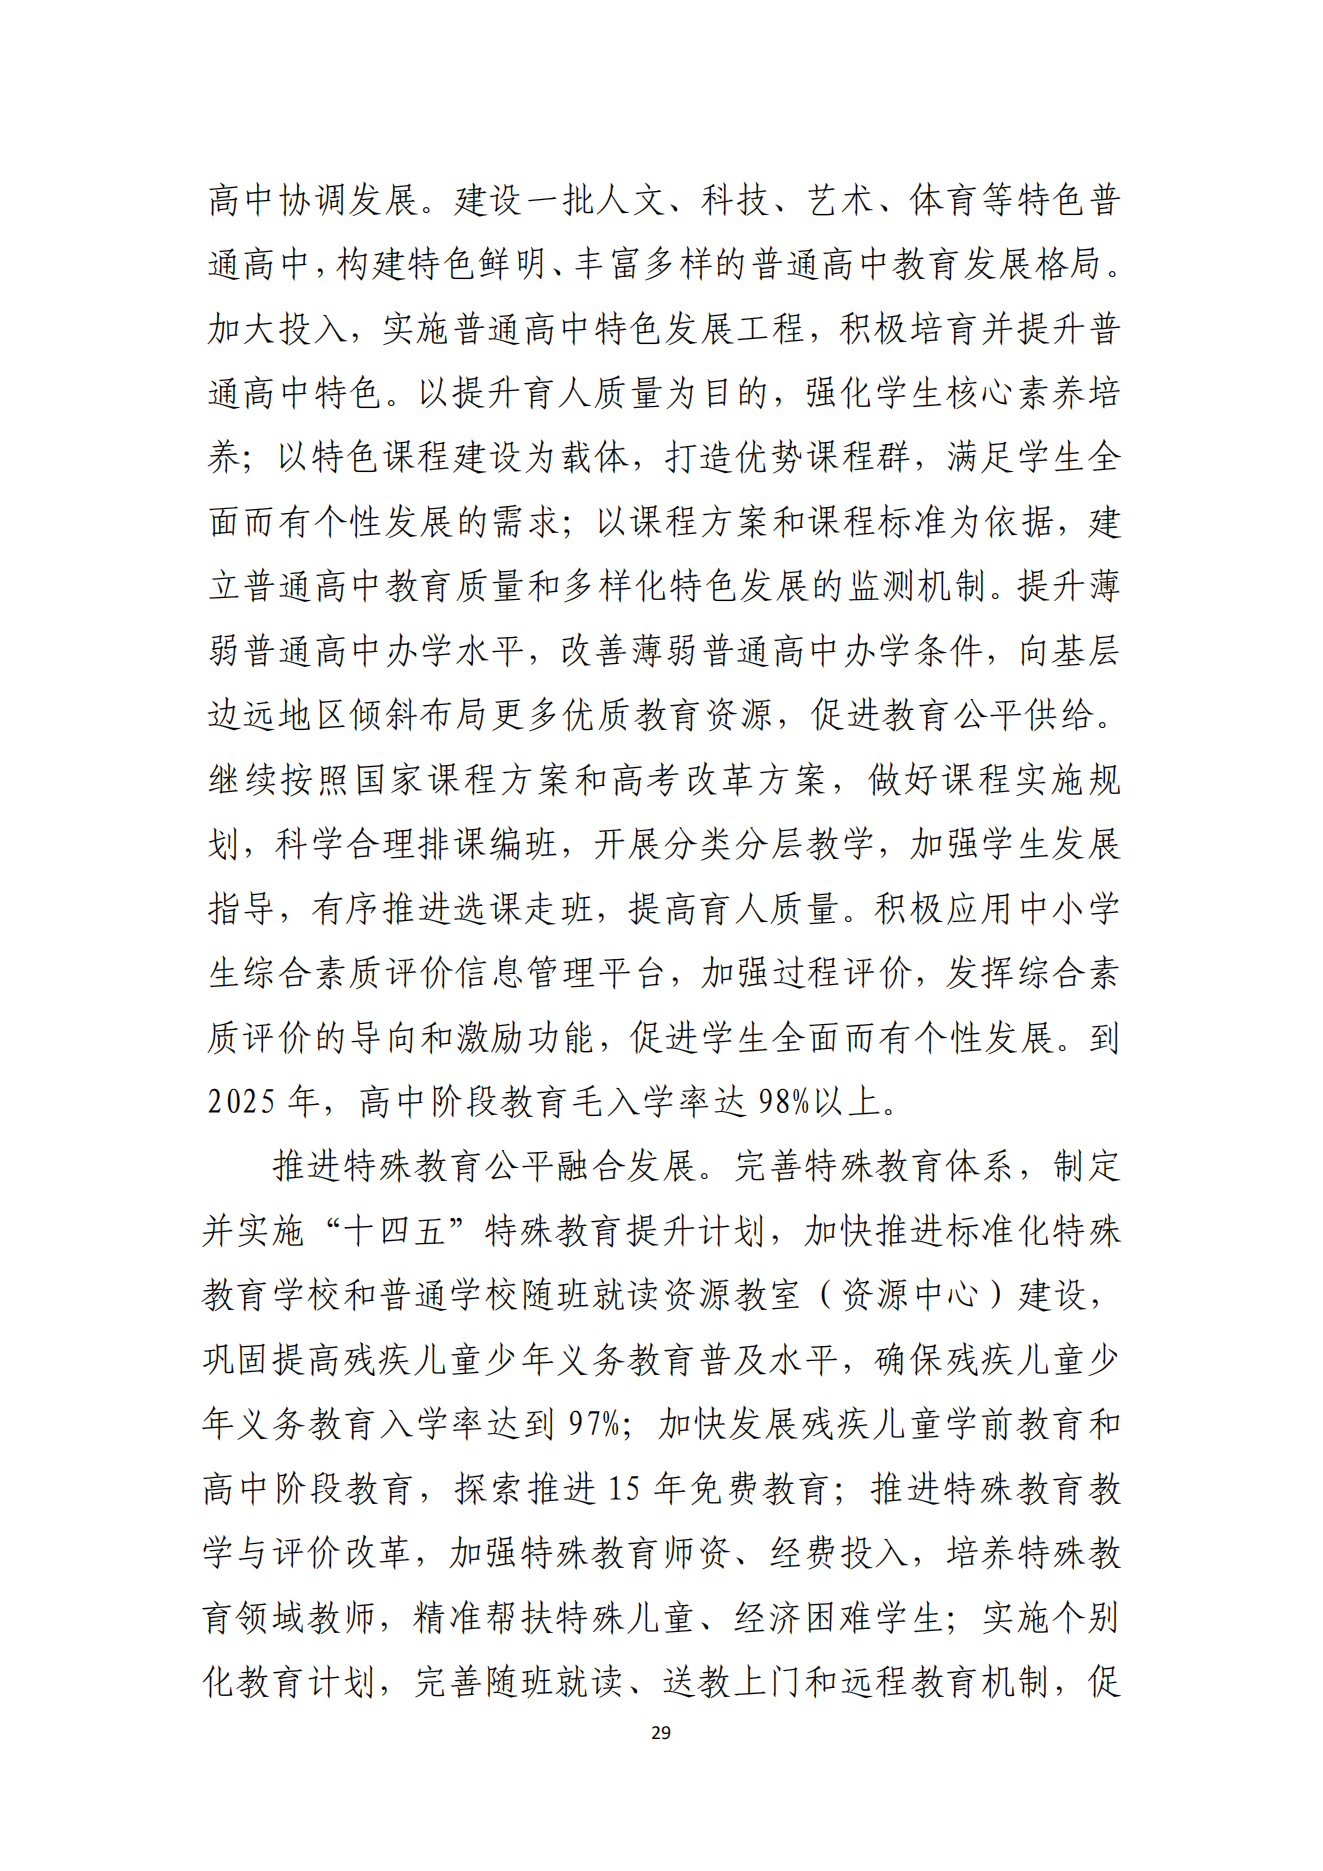 湛江市人民政府办公室关于印发湛江市教育发展“十四五”规划的通知_28.png